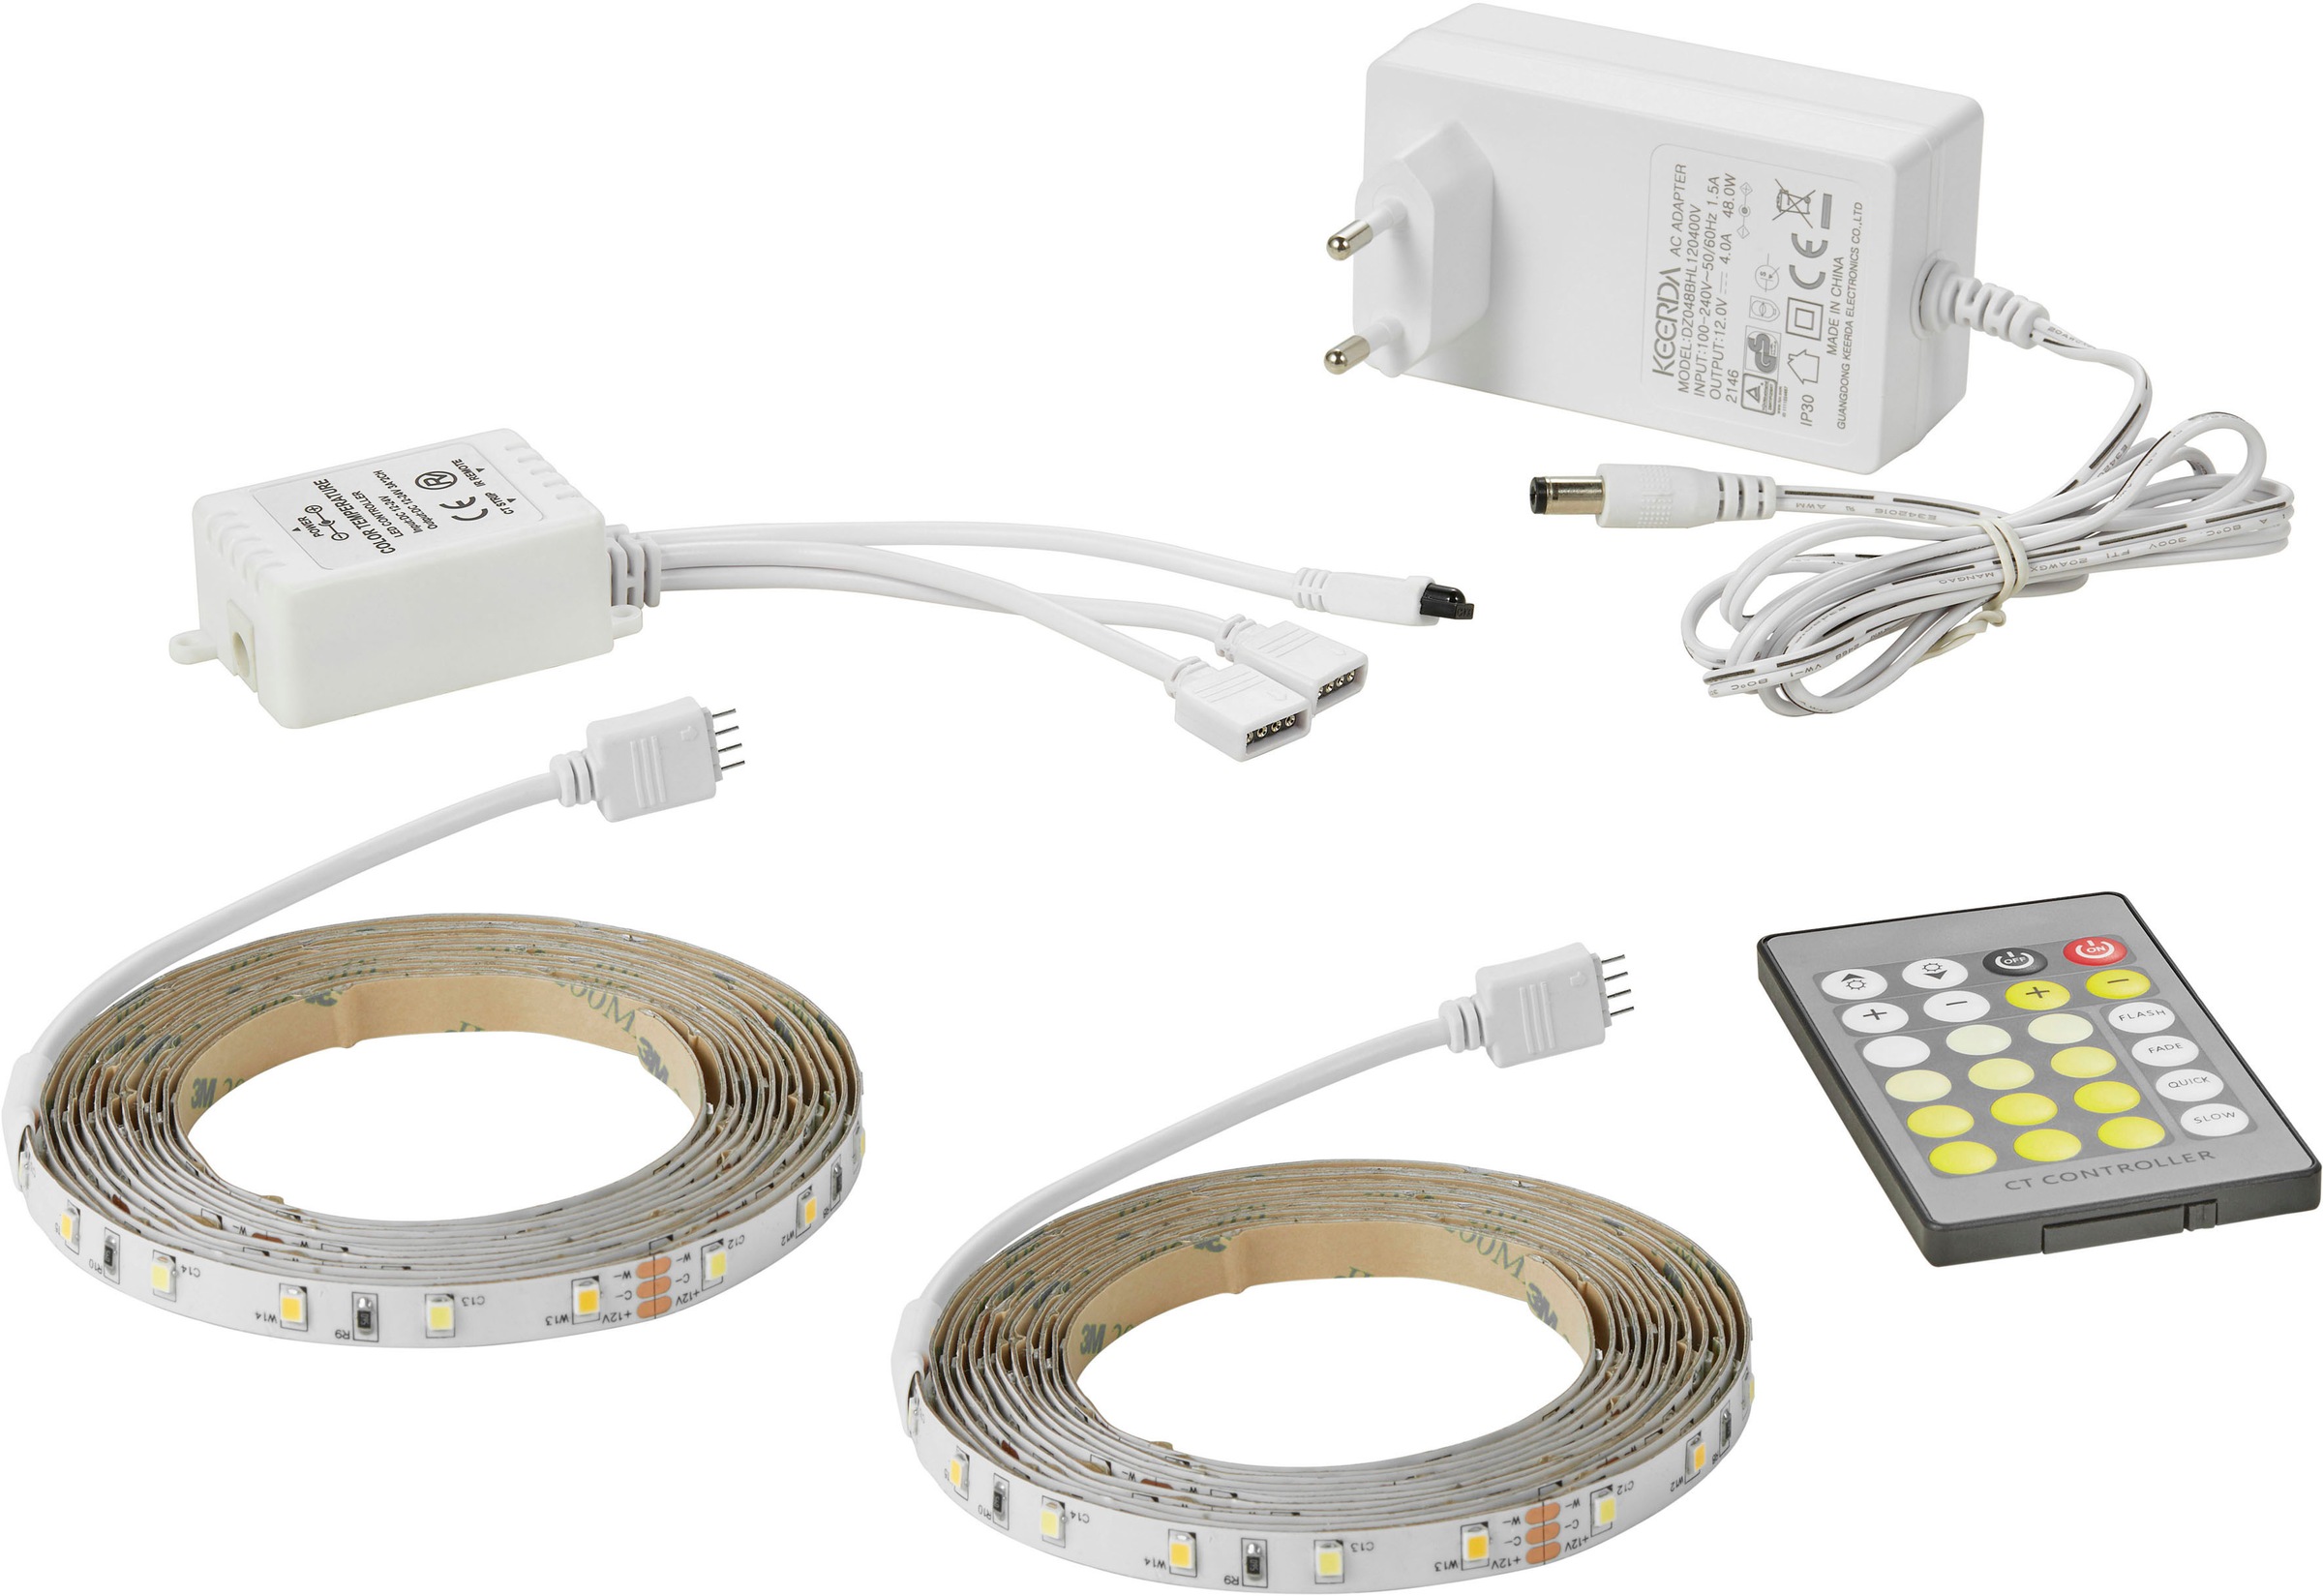 Nordlux LED online weißes und Stripe dimmbares Licht, bei OTTO inkl. Einstellbares »Ledstrip«, Fernbedienung